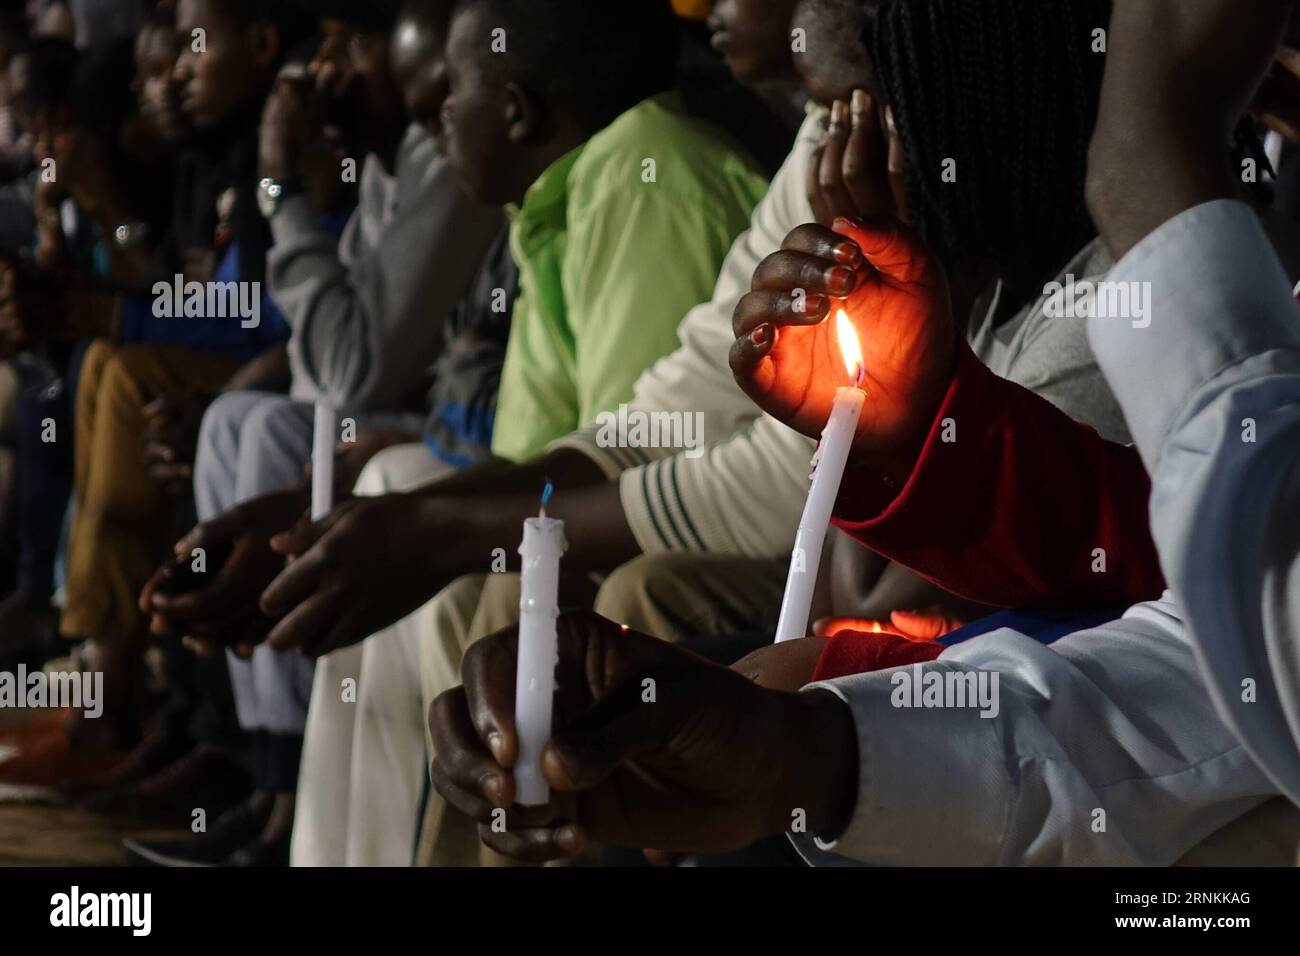 (170408) -- KIGALI, 8 aprile 2017 -- la gente tiene le candele durante una veglia notturna che commemora il genocidio del 1994 contro i Tutsi in Ruanda presso l'Amahoro National Stadium di Kigali, Ruanda, il 7 aprile 2017. L'accensione della fiamma della speranza e la posa della corona al Kigali Genocide Memorial Centre hanno segnato l'inizio della 23a commemorazione del genocidio del 1994 in cui sono state uccise più di un milione di persone in Ruanda, principalmente Tutsi e Hutus moderato. (Zxj) RWANDA-KIGALI-GENOCIDIO-COMMEMORAZIONE stringer PUBLICATIONxNOTxINxCHN Kigali 8 aprile 2017 celebrità tengono le candele durante un Commemo della Veglia notturna Foto Stock